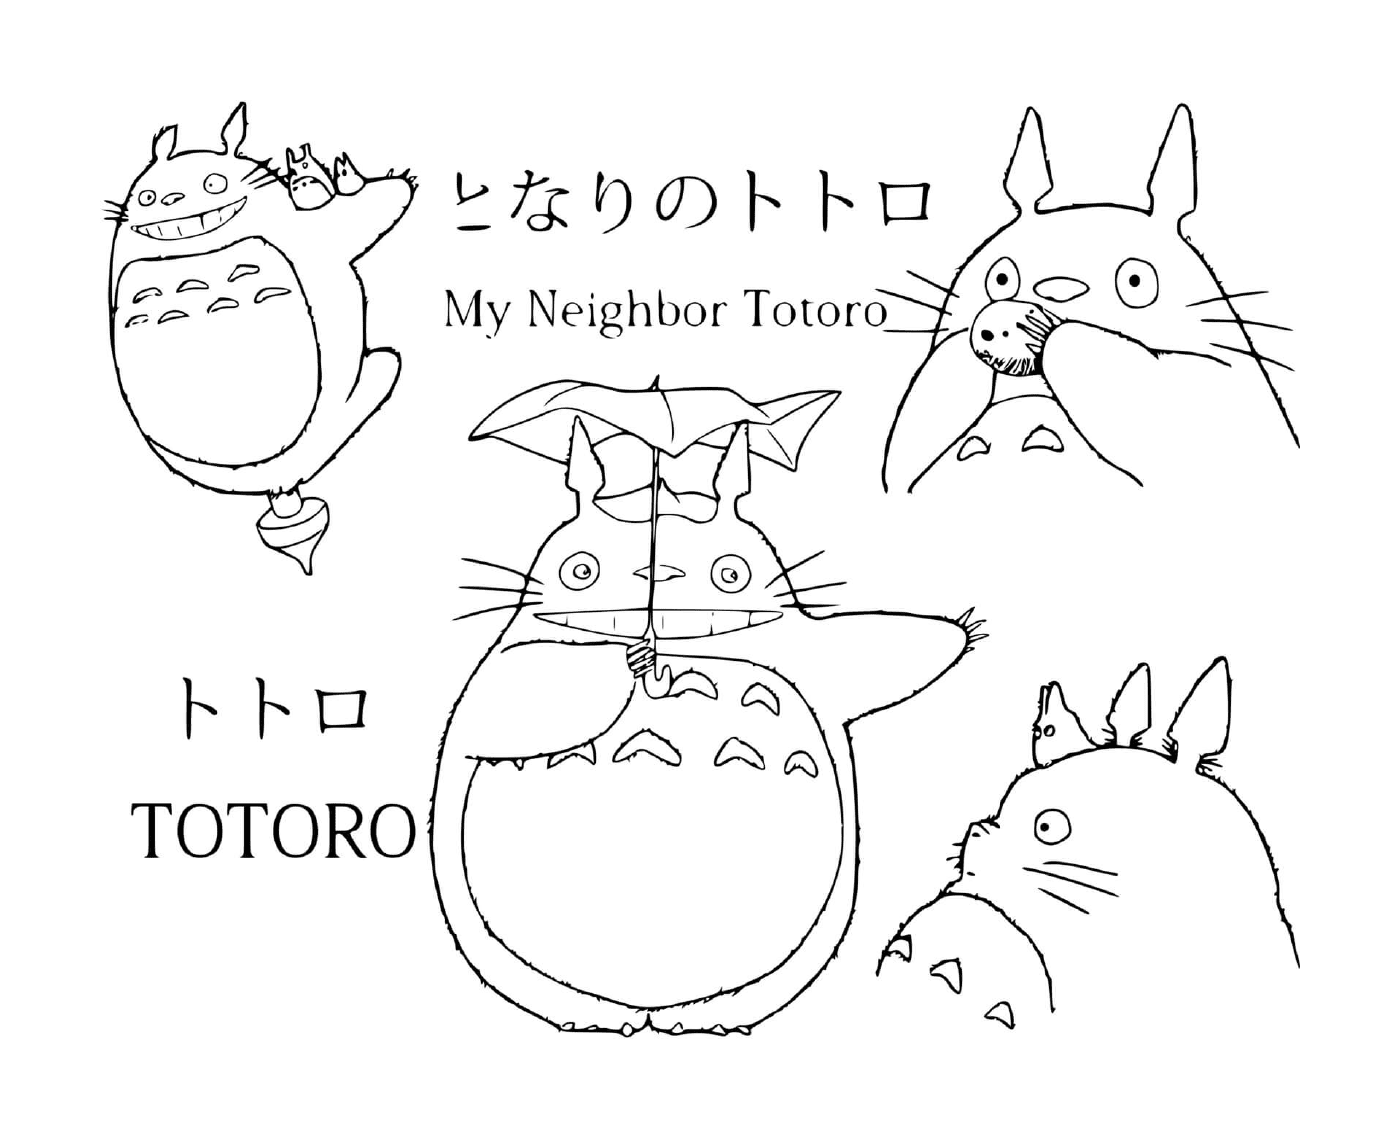  Gruppe von Totoro in verschiedenen Posen gezeichnet 